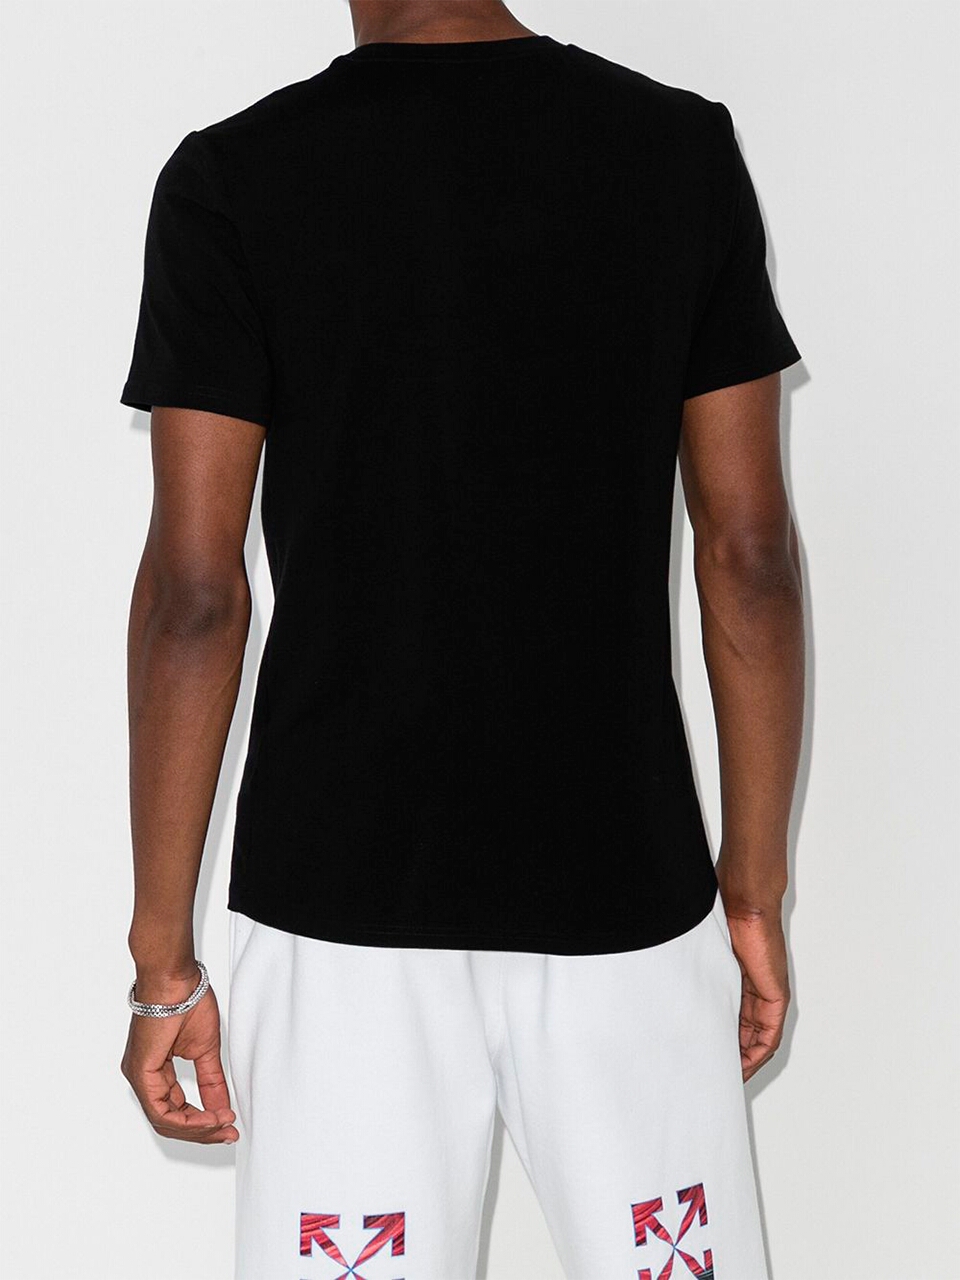 Imagem de: Camiseta Moschino Preta com Logo Interrogação Dupla Branco